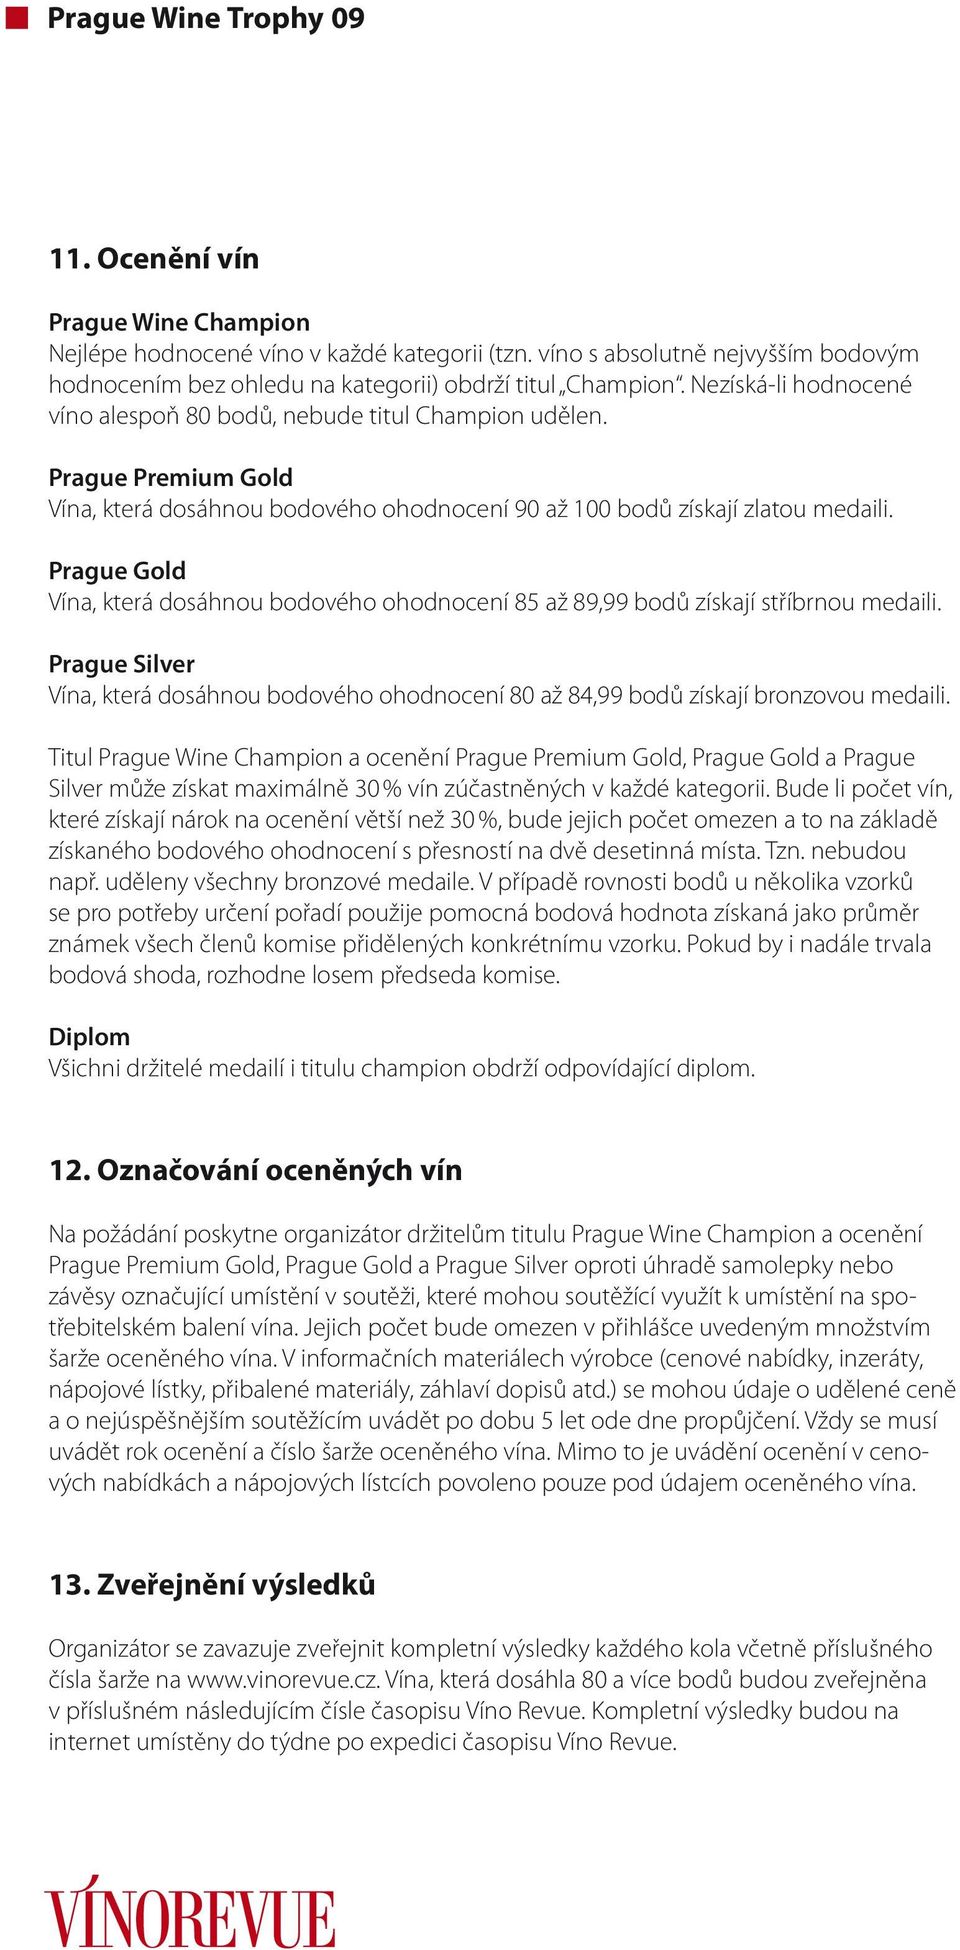 Prague Gold Vína, která dosáhnou bodového ohodnocení 85 až 89,99 bodů získají stříbrnou medaili. Prague Silver Vína, která dosáhnou bodového ohodnocení 80 až 84,99 bodů získají bronzovou medaili.